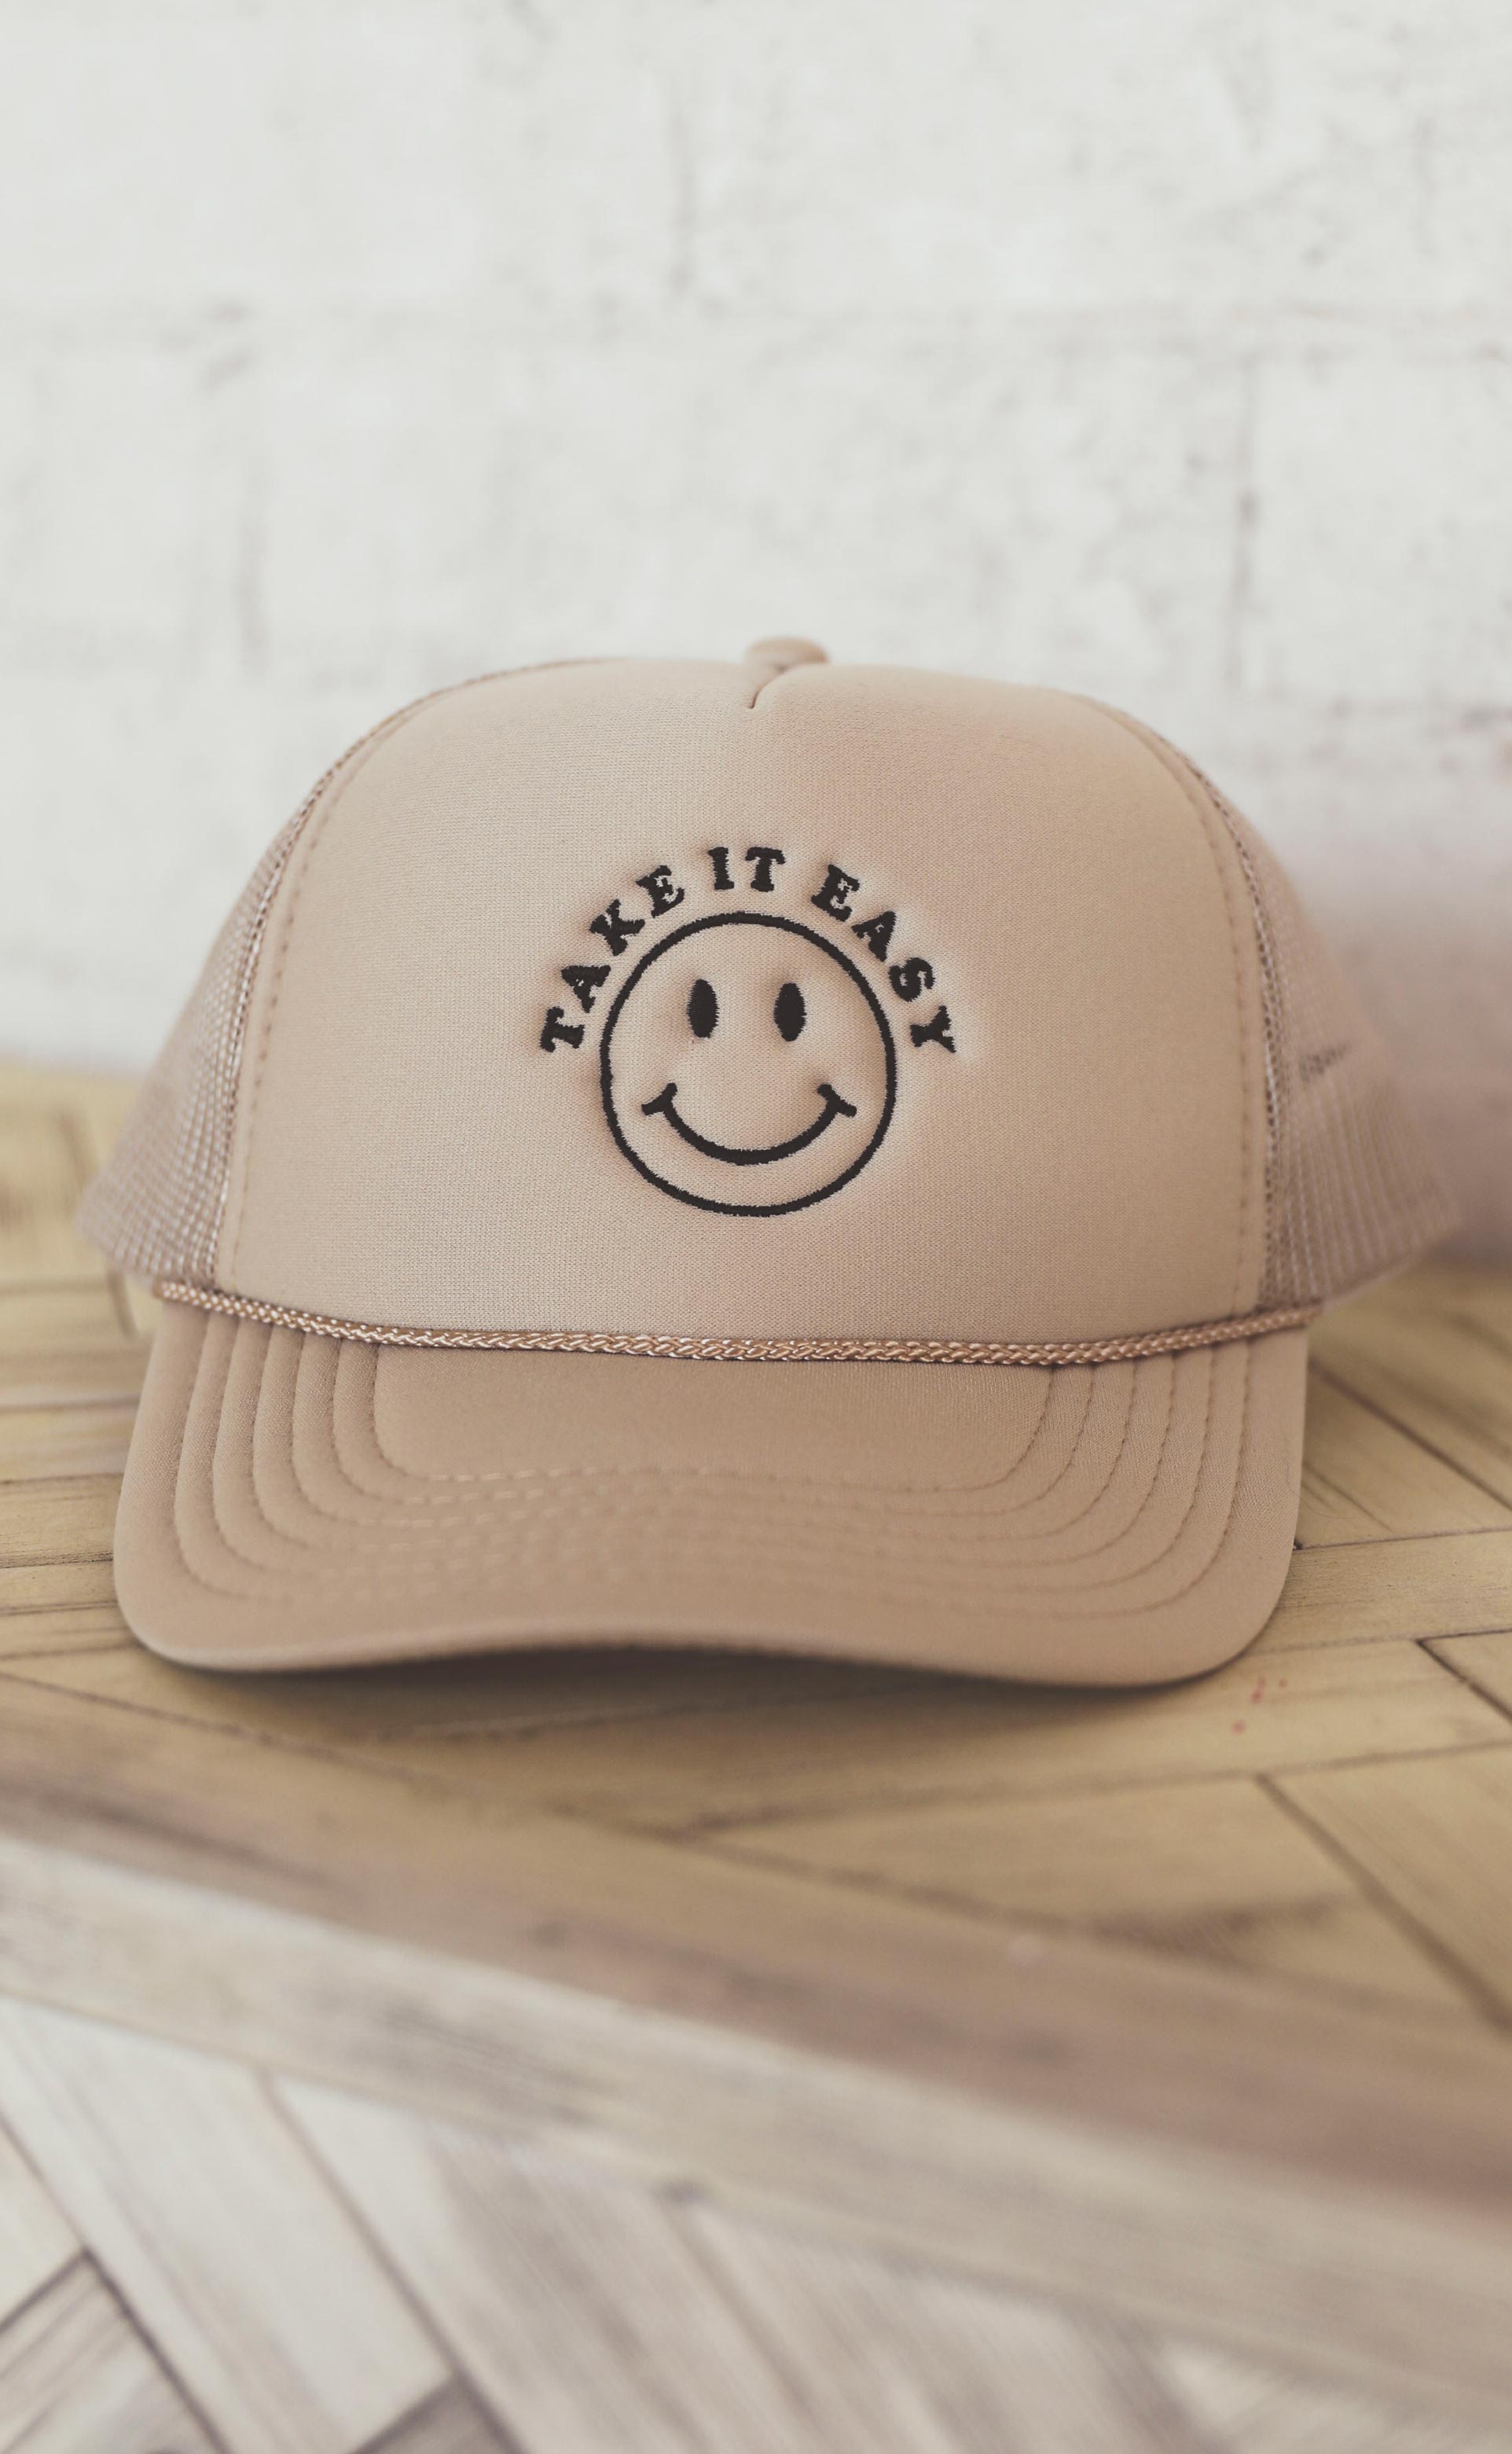 friday + saturday: take it easy trucker hat – Riffraff